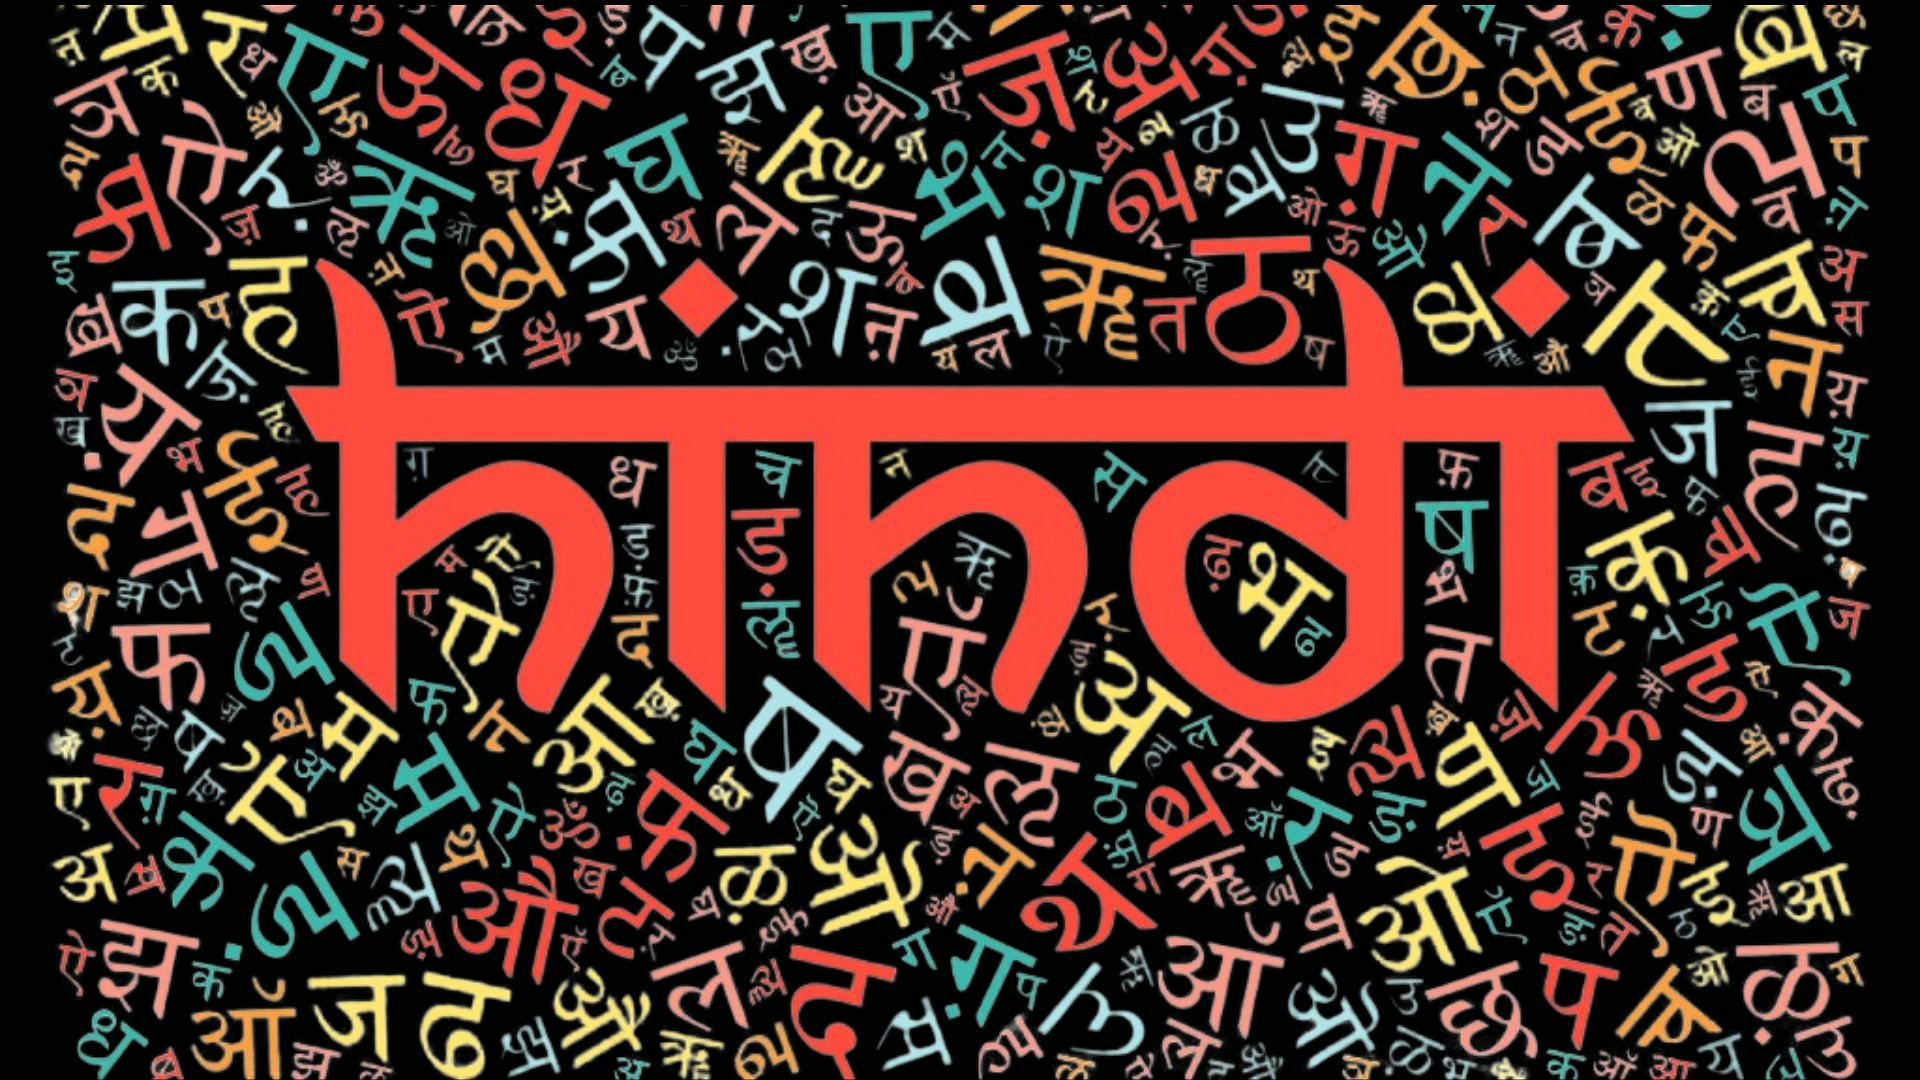 <div class="paragraphs"><p>UN ने हिंदी भाषा को किया शामिल, अतंरराष्ट्रीय मंच पर हिंदी का कई बार बढ़ा है मान</p></div>